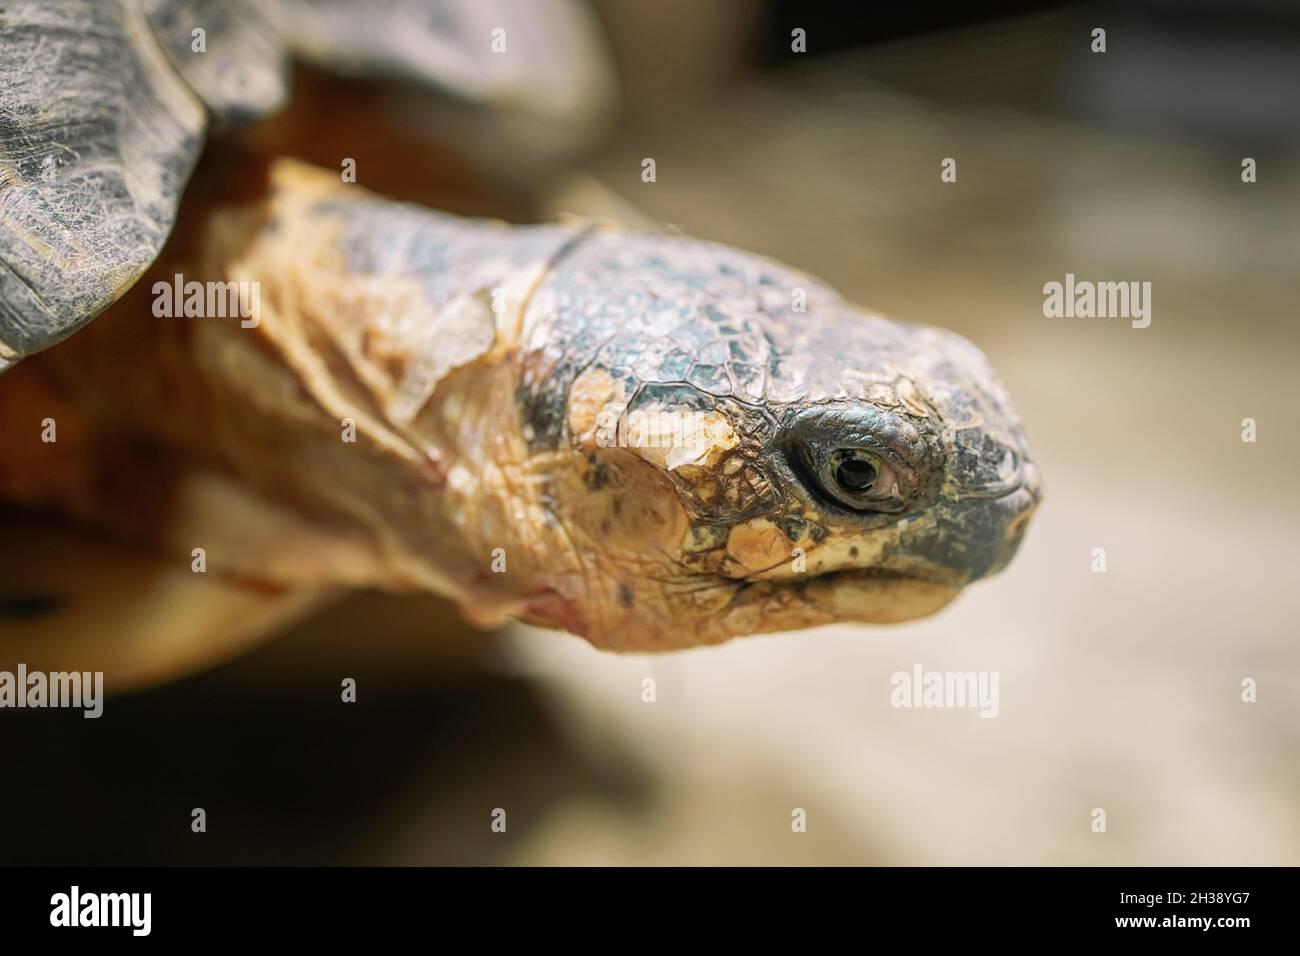 Primo piano della tartaruga irradiata nel suo habitat sulla terra. Tartaruga bella - specie rare, endemica Madagascar. Concetto di animali tropicali esotici. Foto Stock